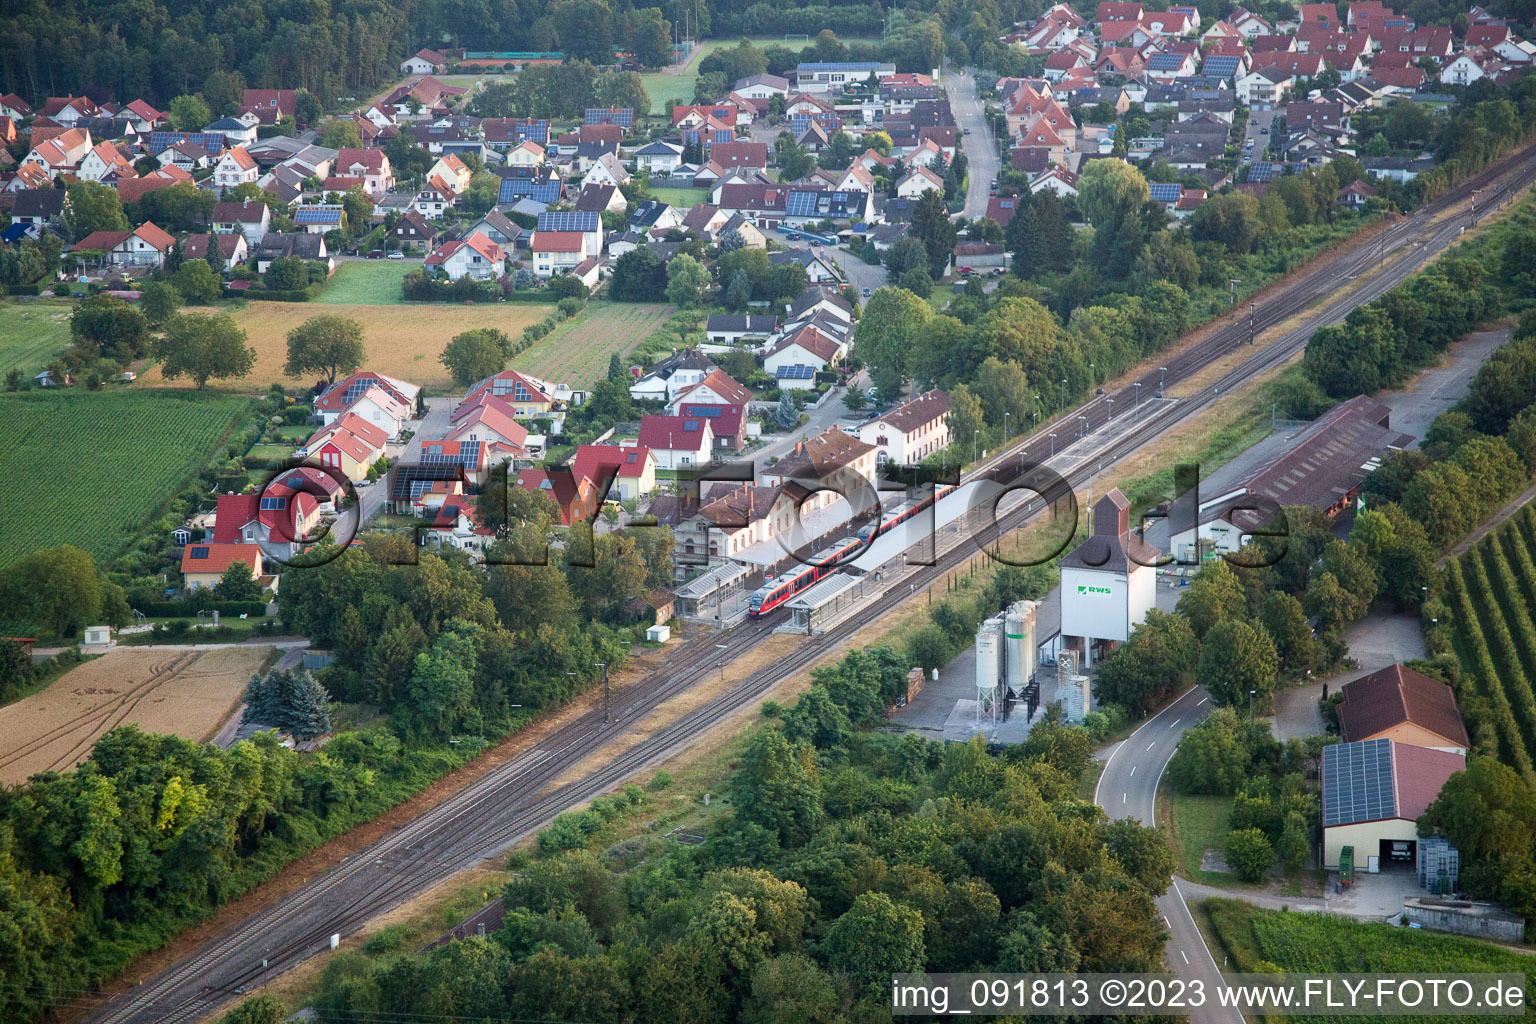 Winden im Bundesland Rheinland-Pfalz, Deutschland aus der Drohnenperspektive